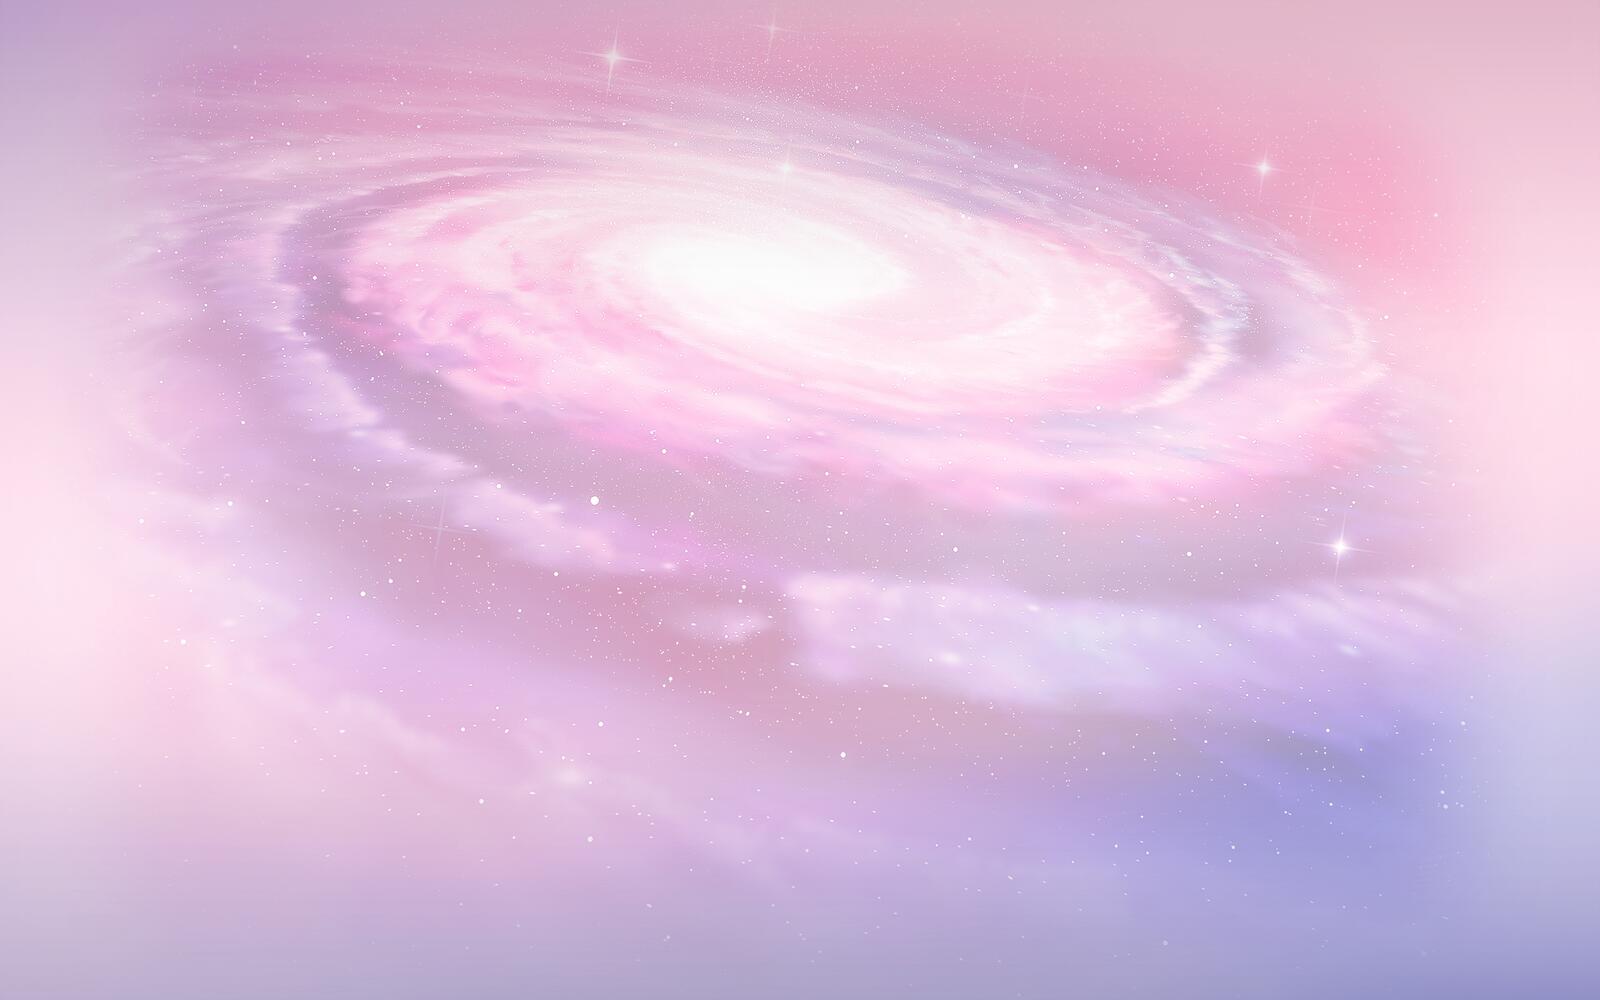 Бесплатное фото Космический вихрь розового цвета